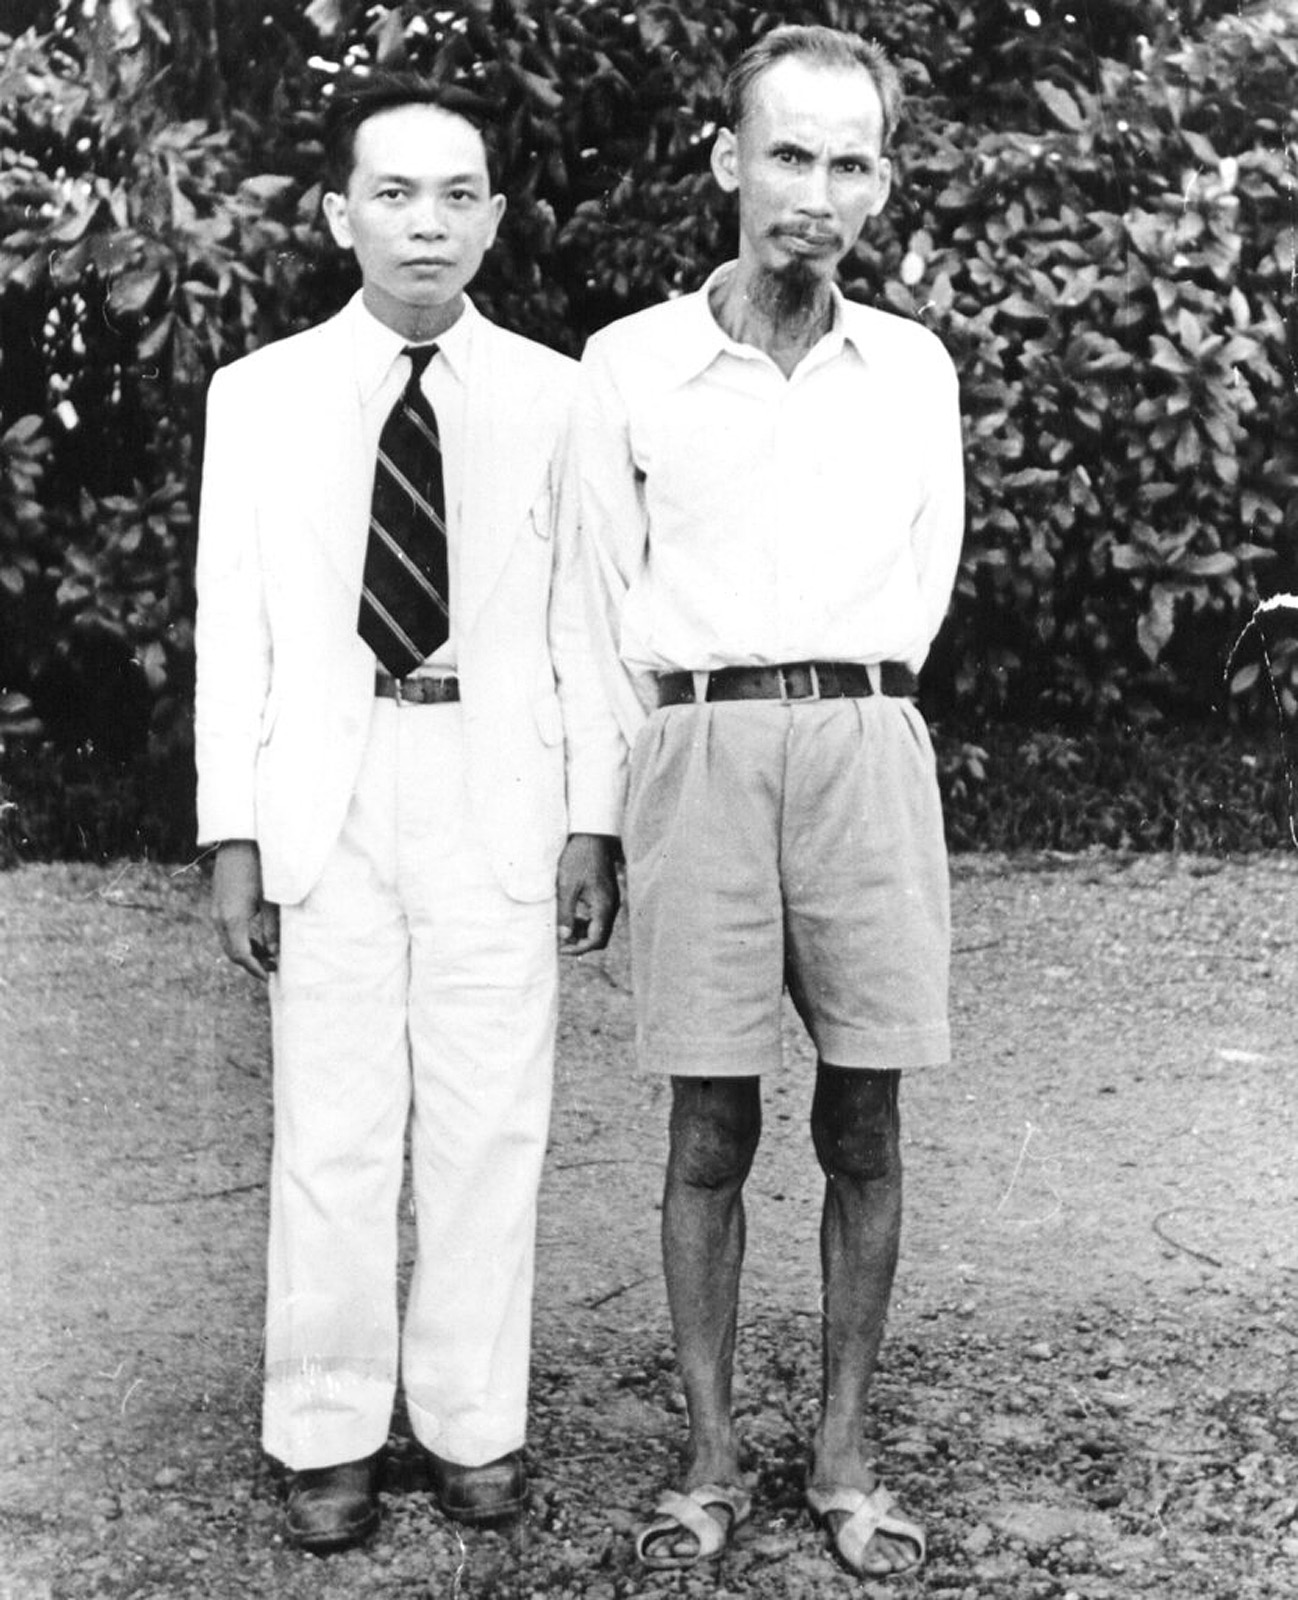 Hồ Chí Minh (right) with Vo Nguyen Giap (left)...